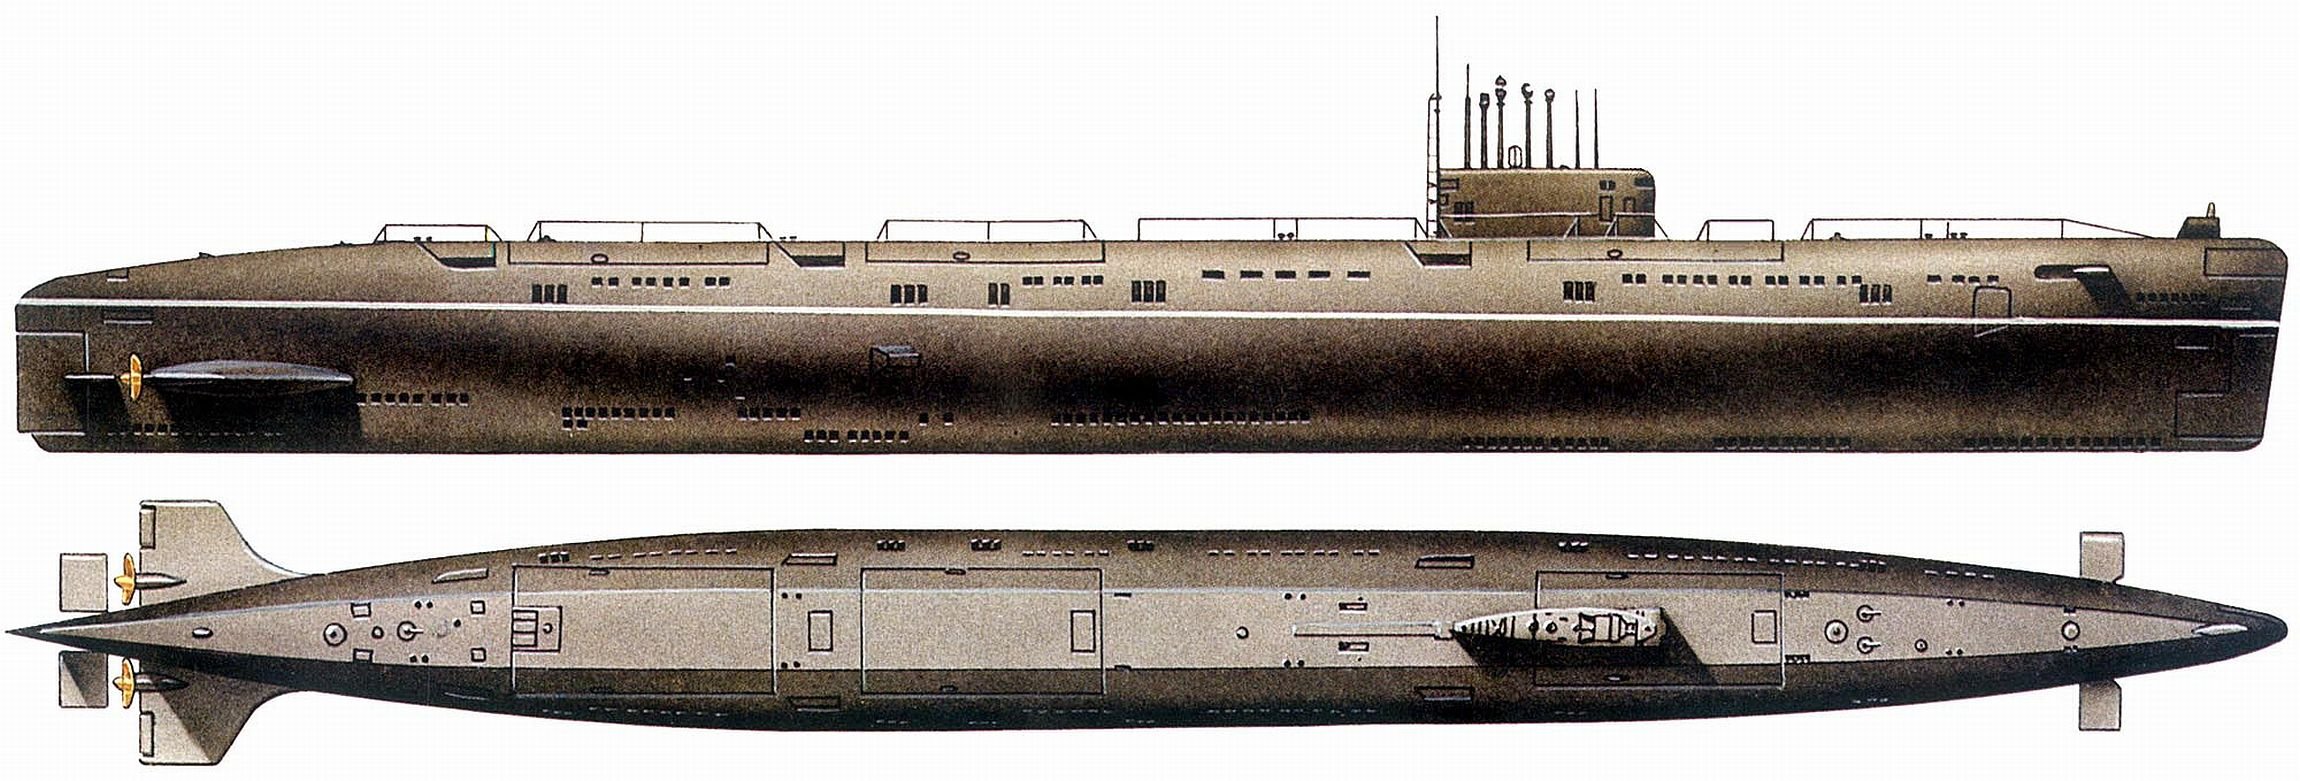 Пл пр т. Проект 675 подводная лодка. Атомная подводная лодка 675 проекта. Подводная лодка проекта 659т. Лодка пр659.